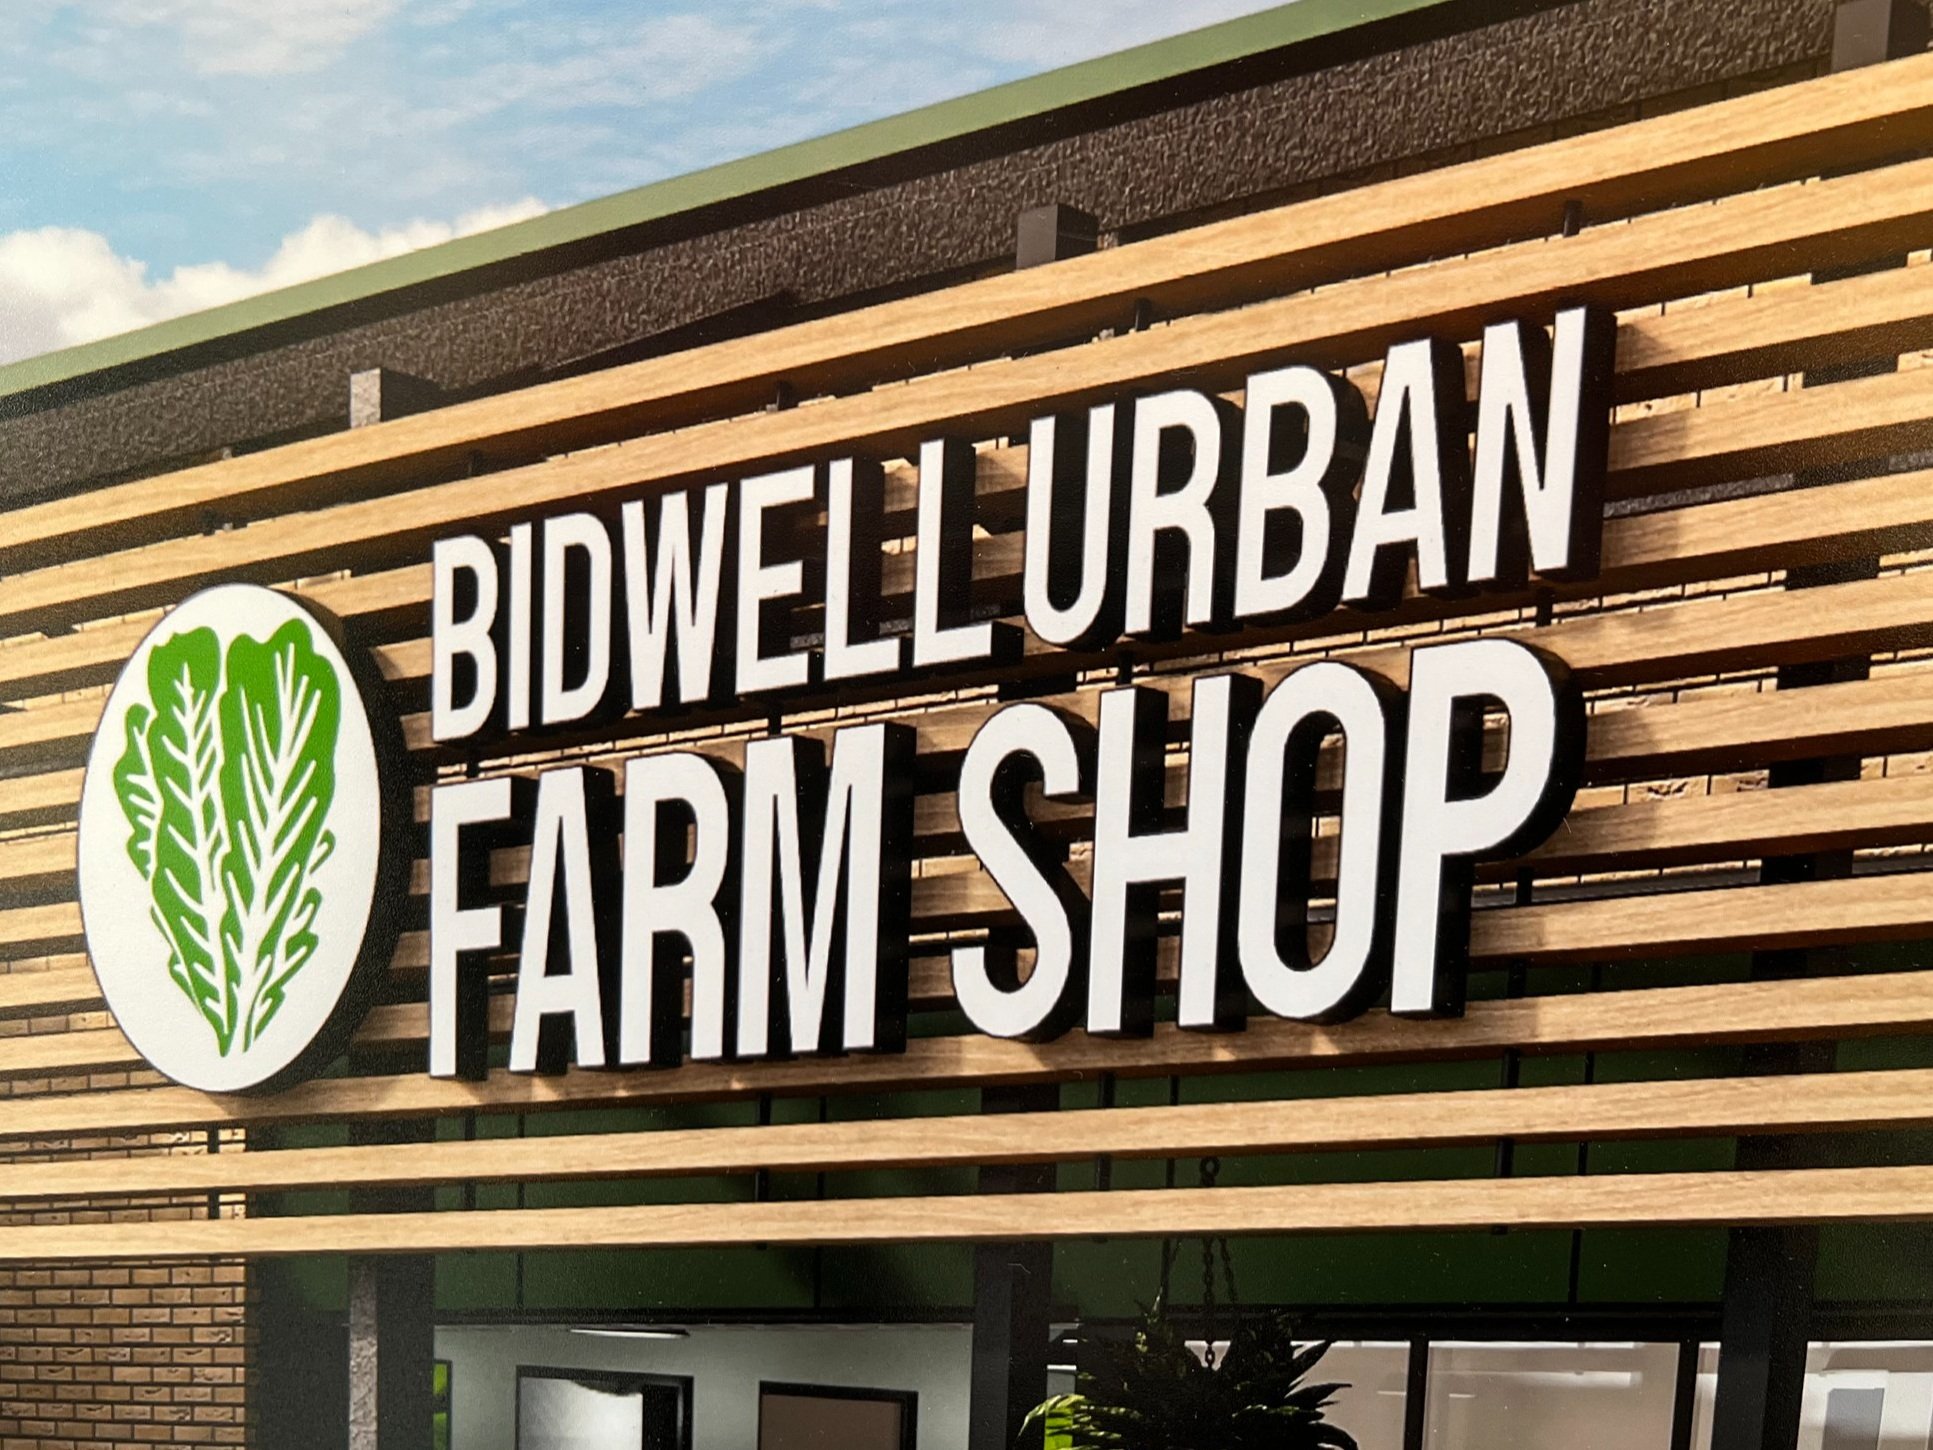 Bidwell Urban Farm Shop